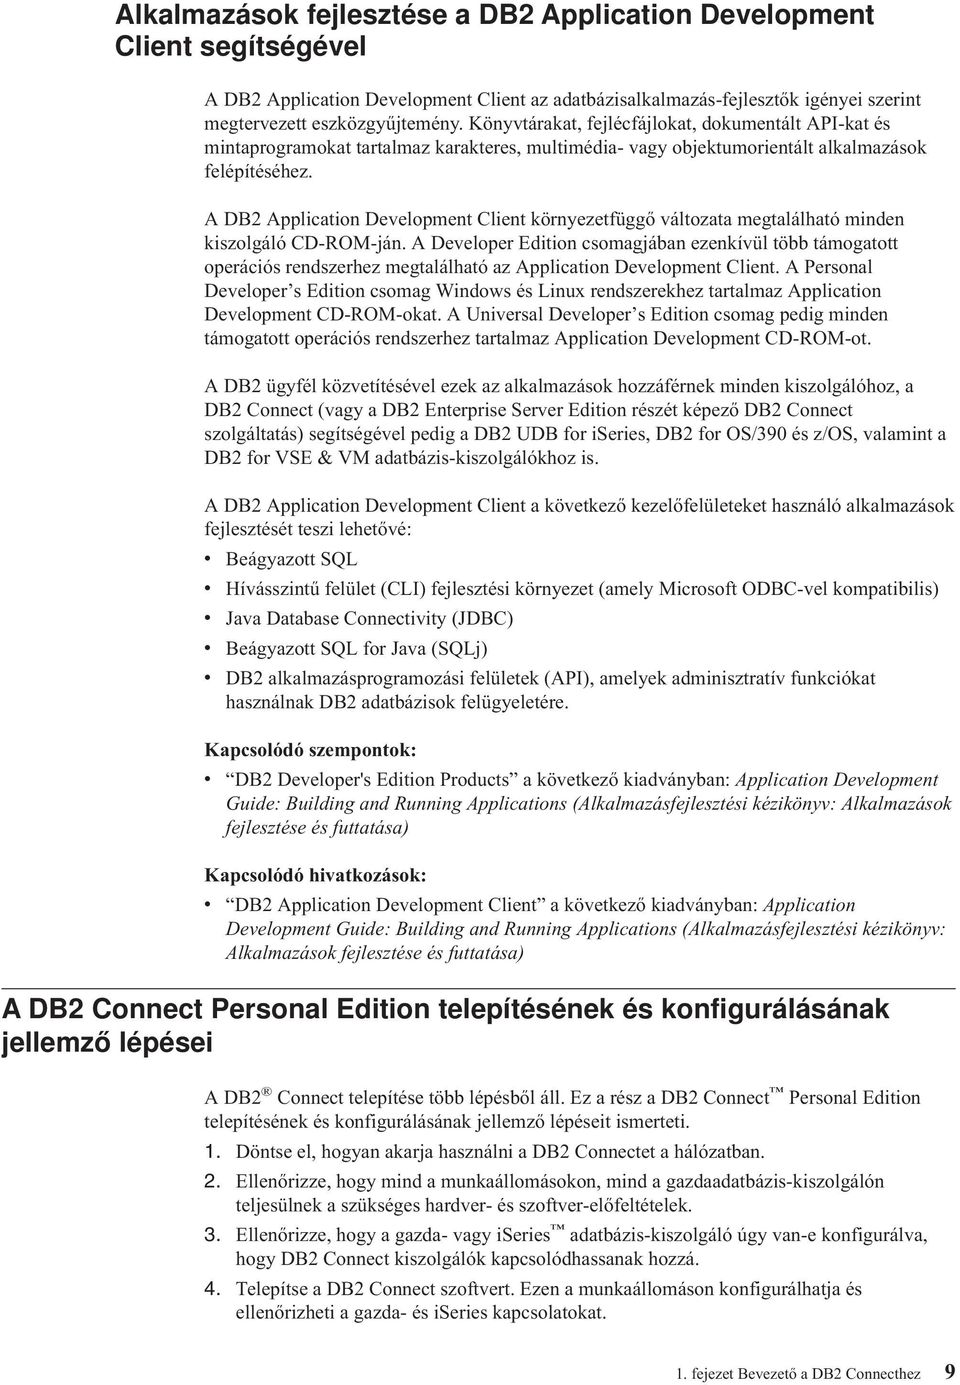 A DB2 Application Deelopment Client környezetfüggő áltozata megtalálható minden kiszolgáló CD-ROM-ján.